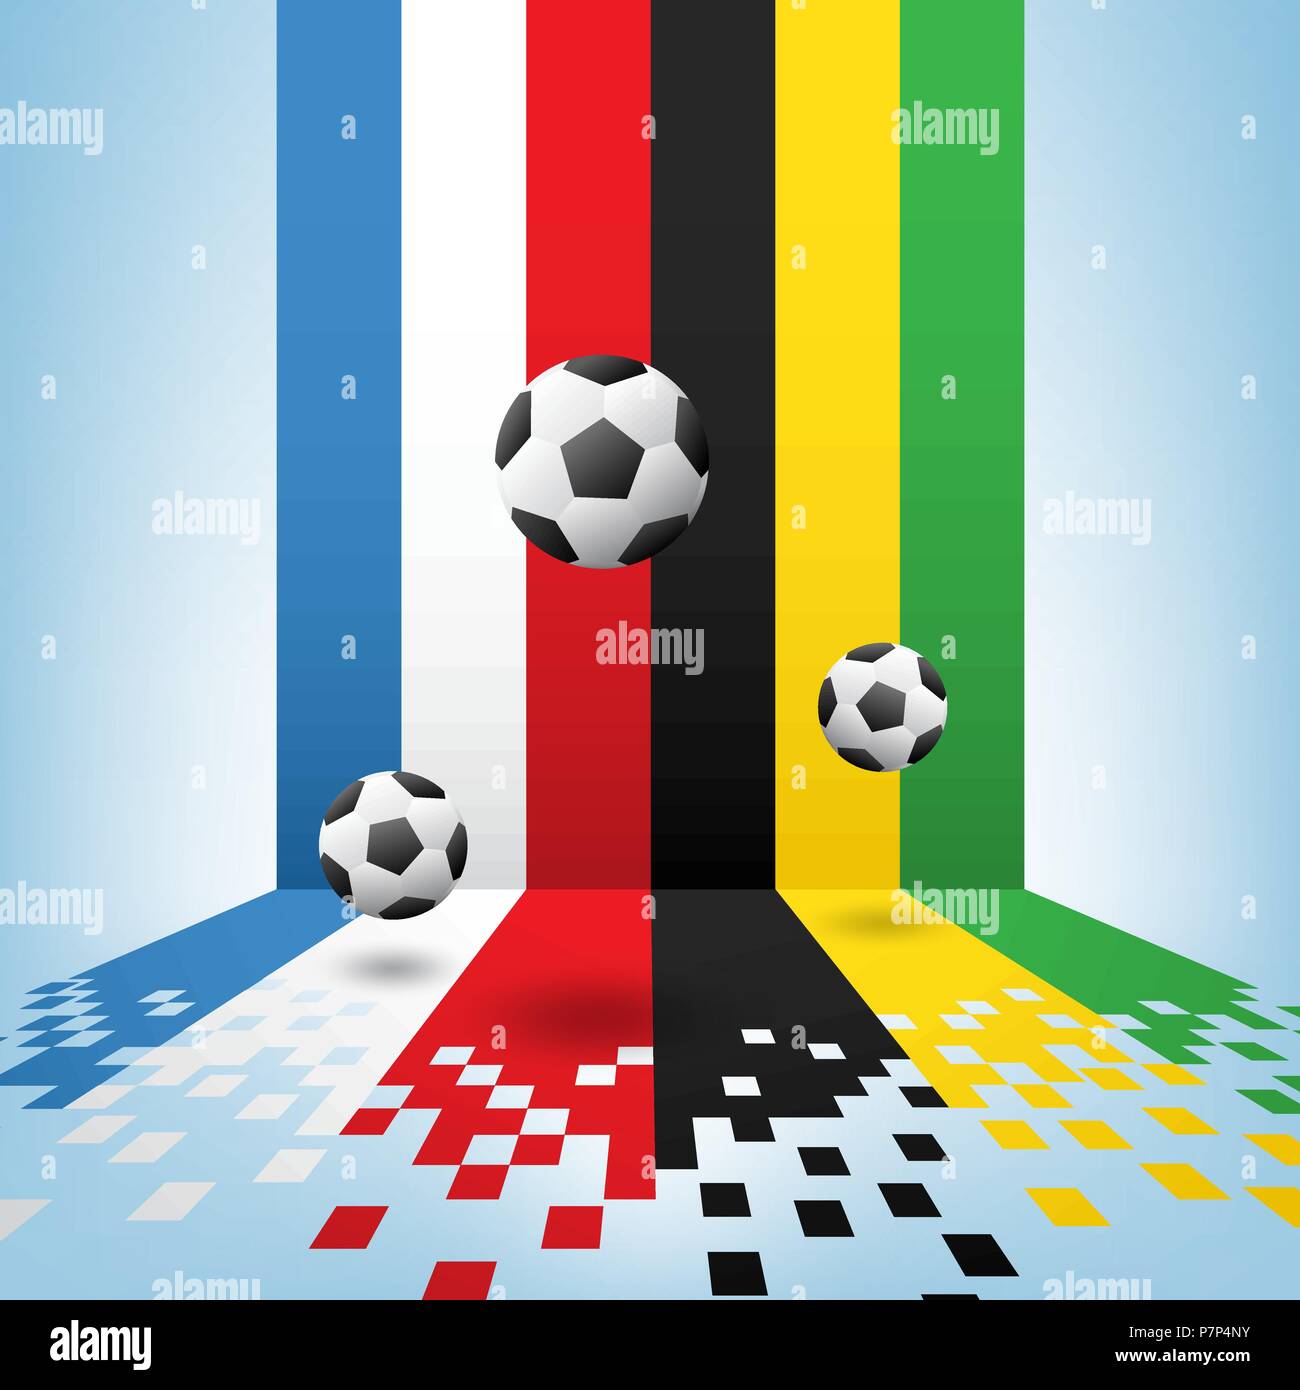 Fußball-Hintergrund, realistisch Kugel mit farbigen Linien. Vector Illustration für die Fußball-Weltmeisterschaft, Spiele, Turnier. Stock Vektor